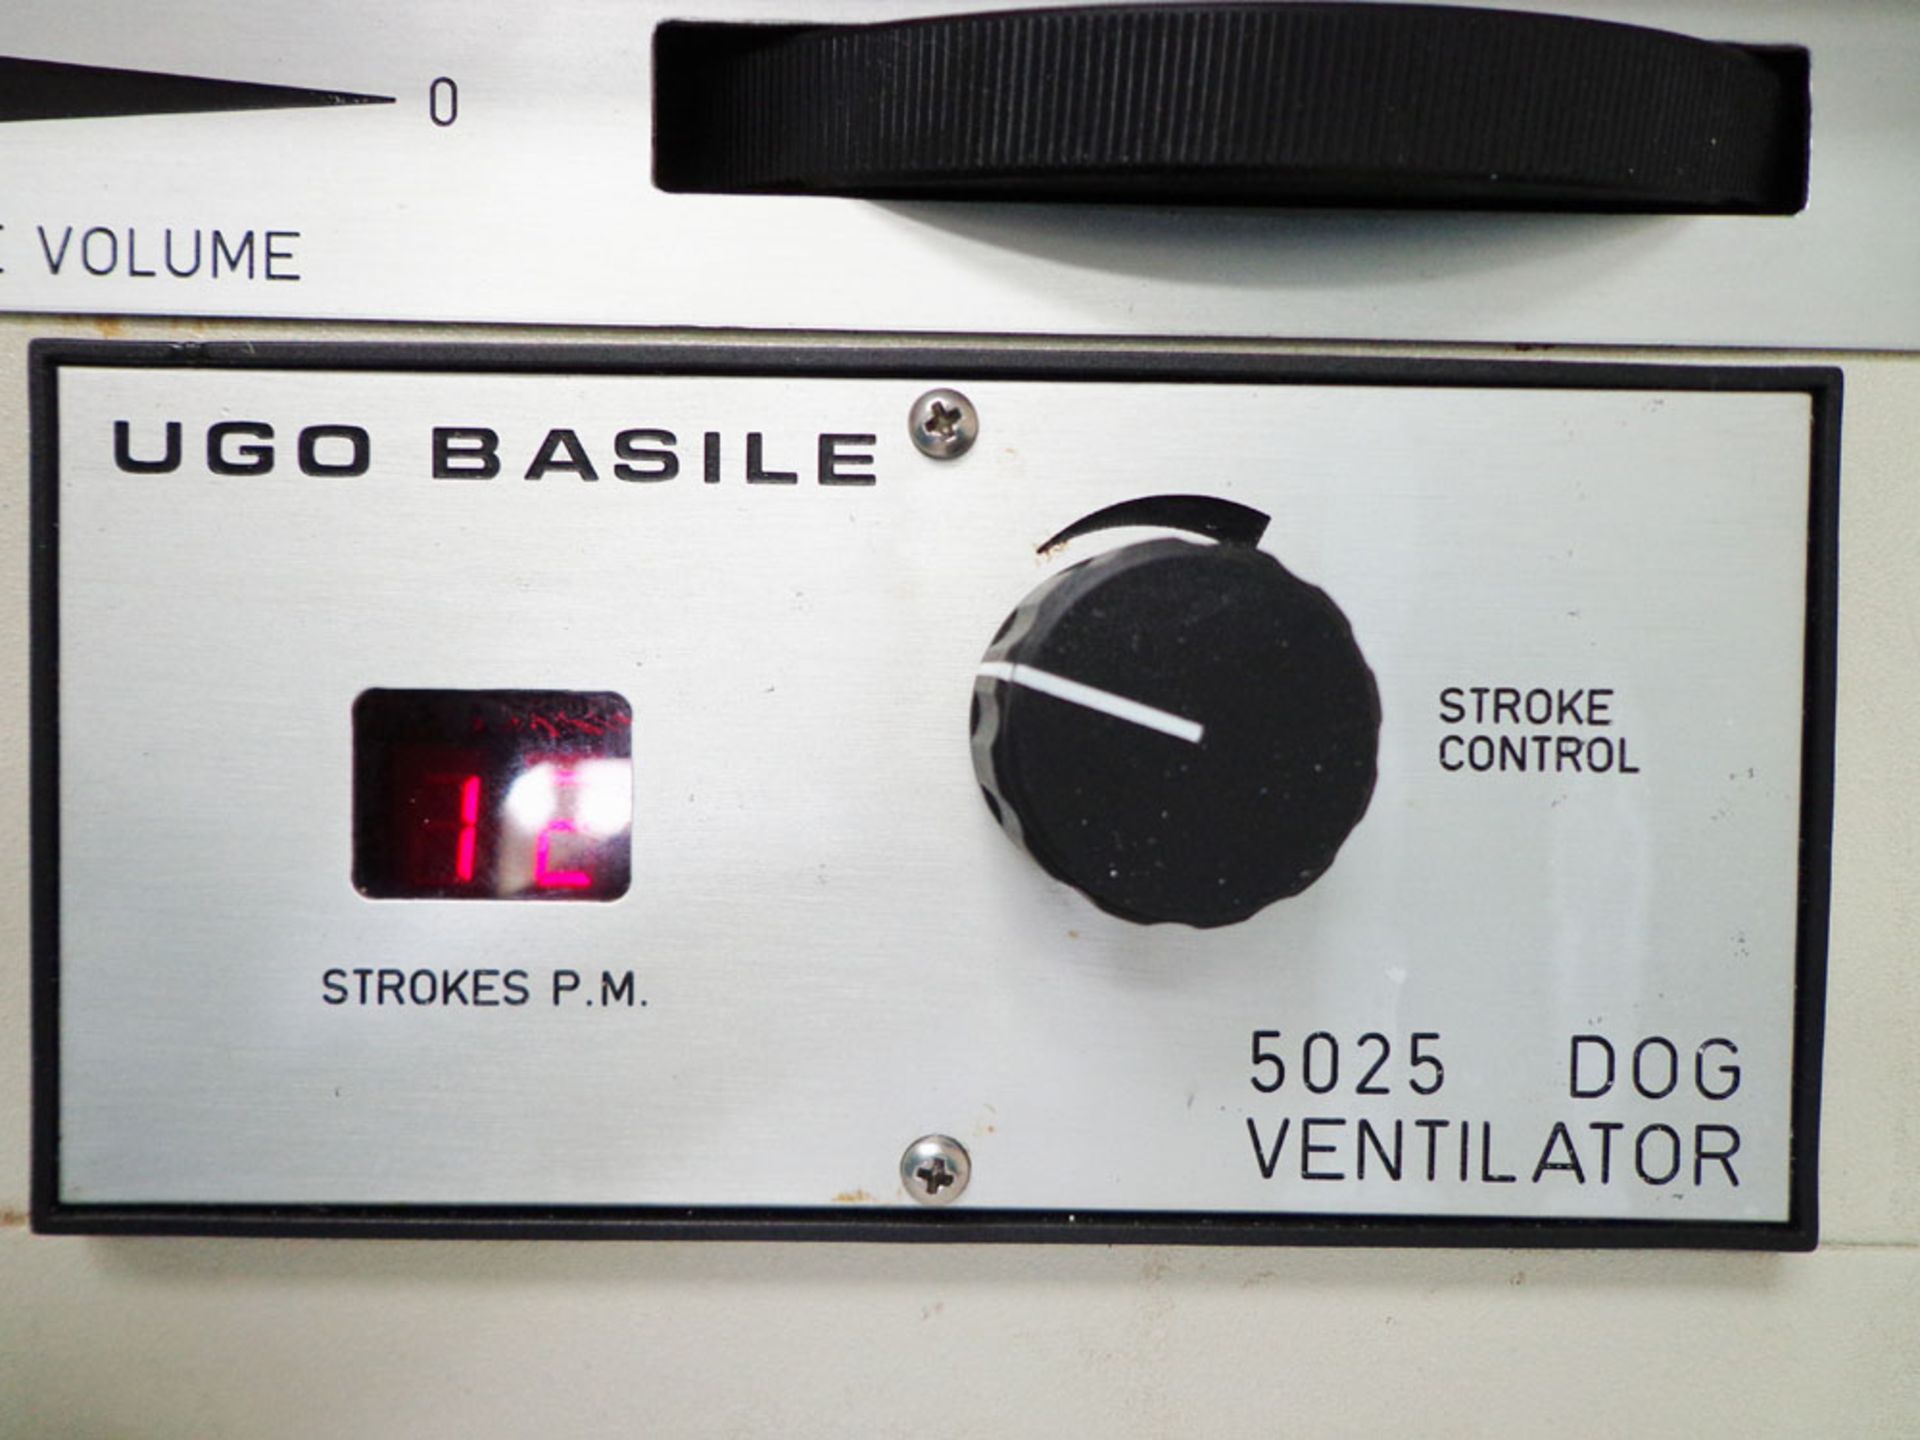 UGO Basile 5025 Dog Ventilator, 700 ml cylinder/ piston, S/N 51193 - Image 2 of 7